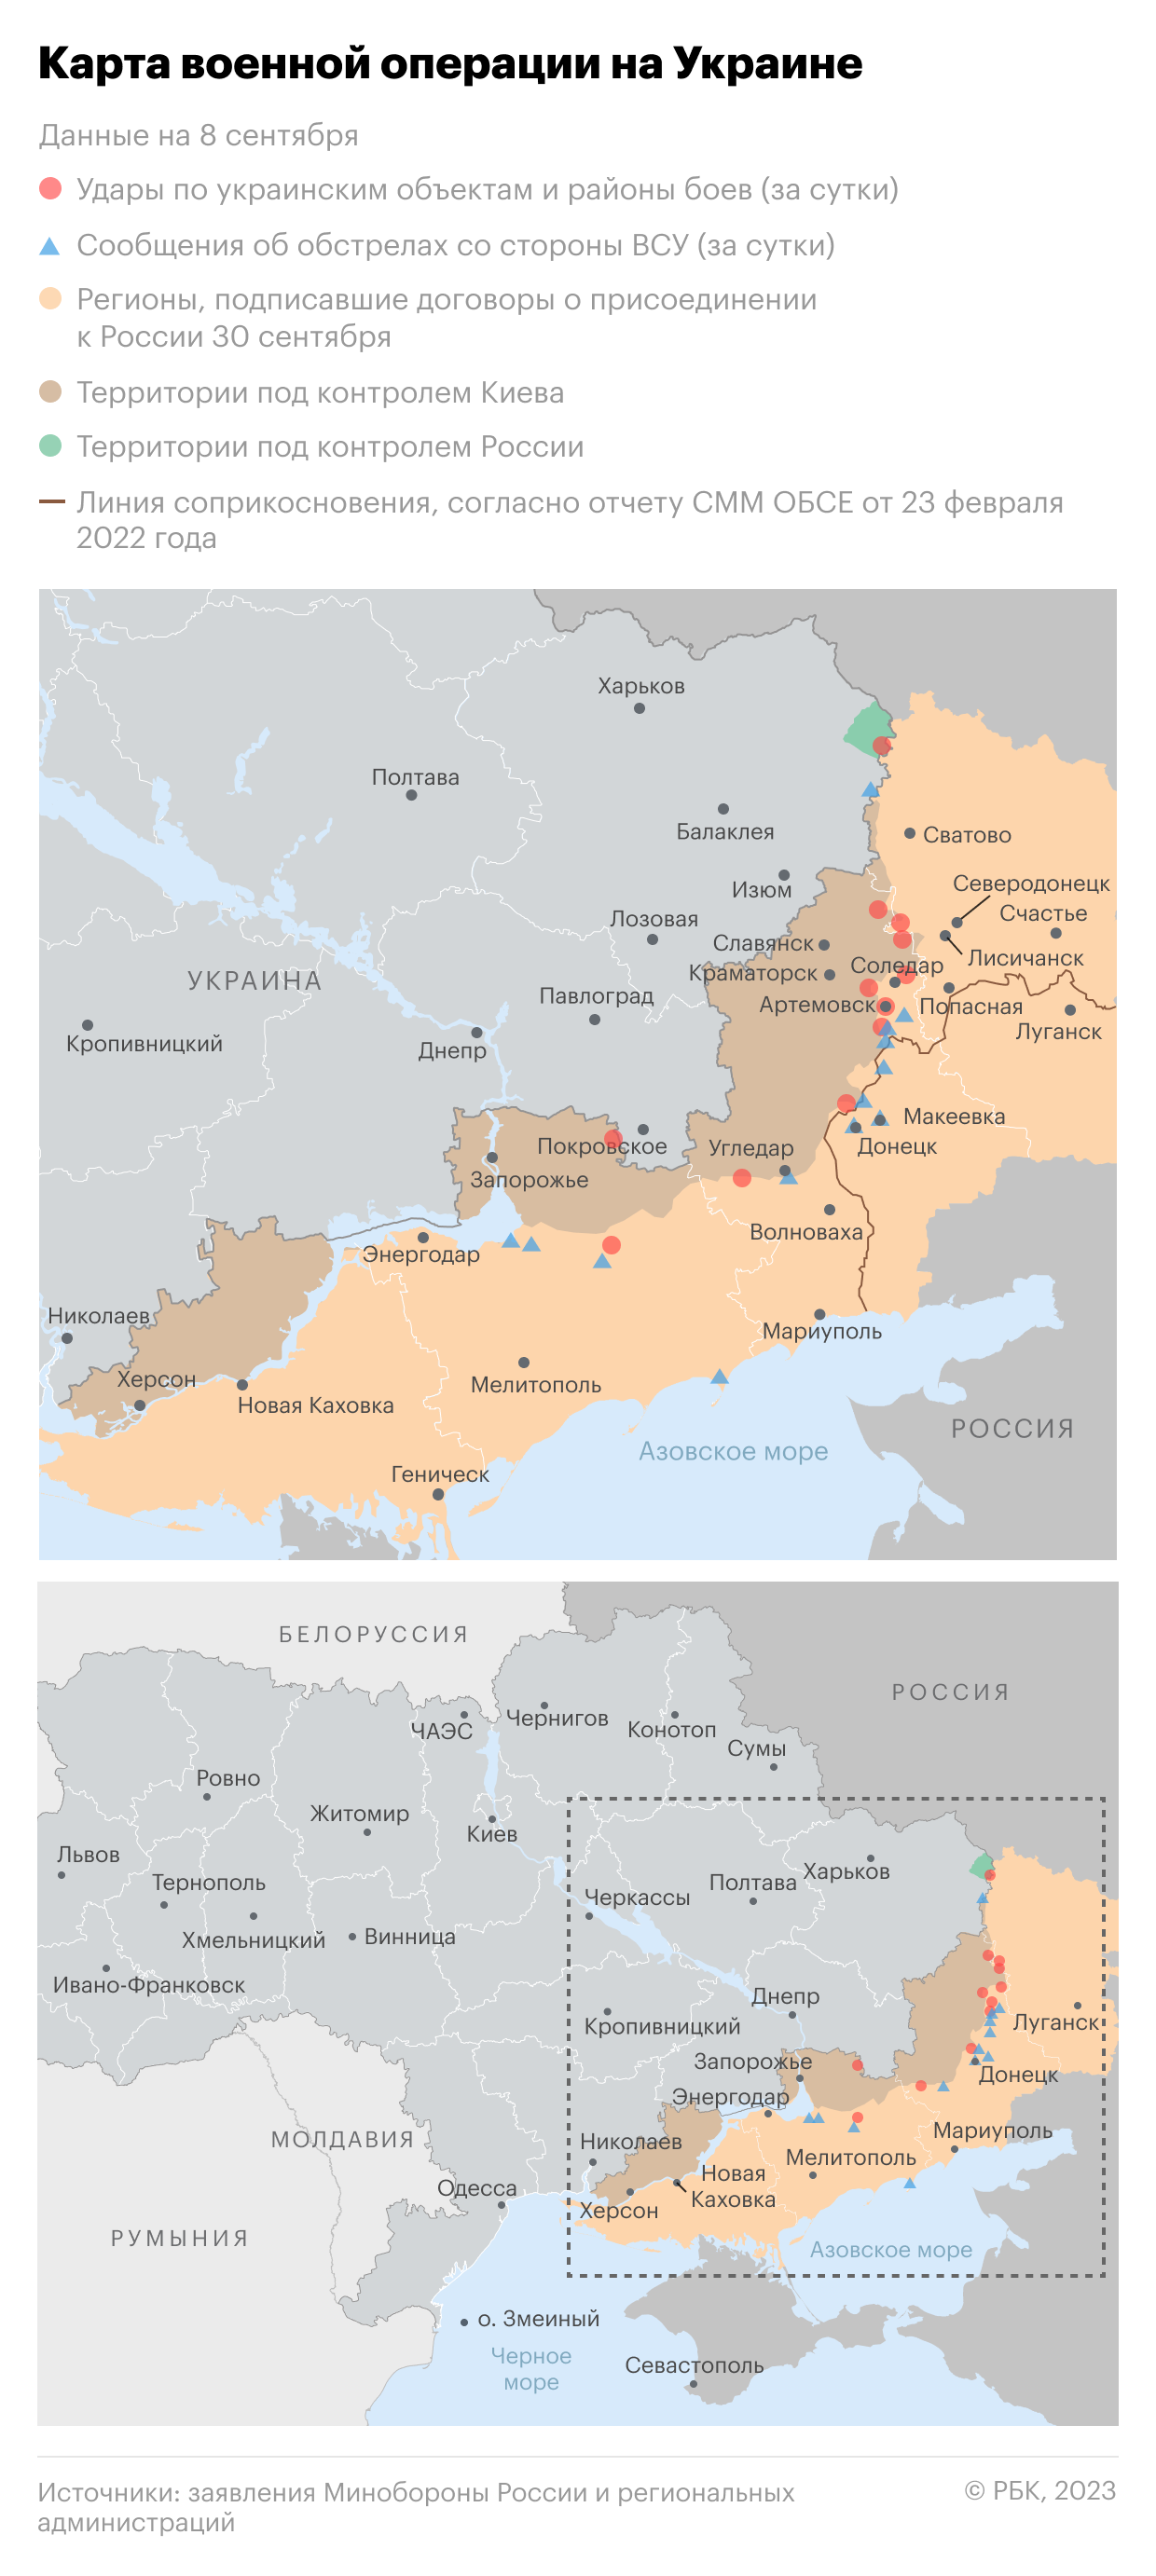 Военная операция на Украине. Карта на 8 сентября